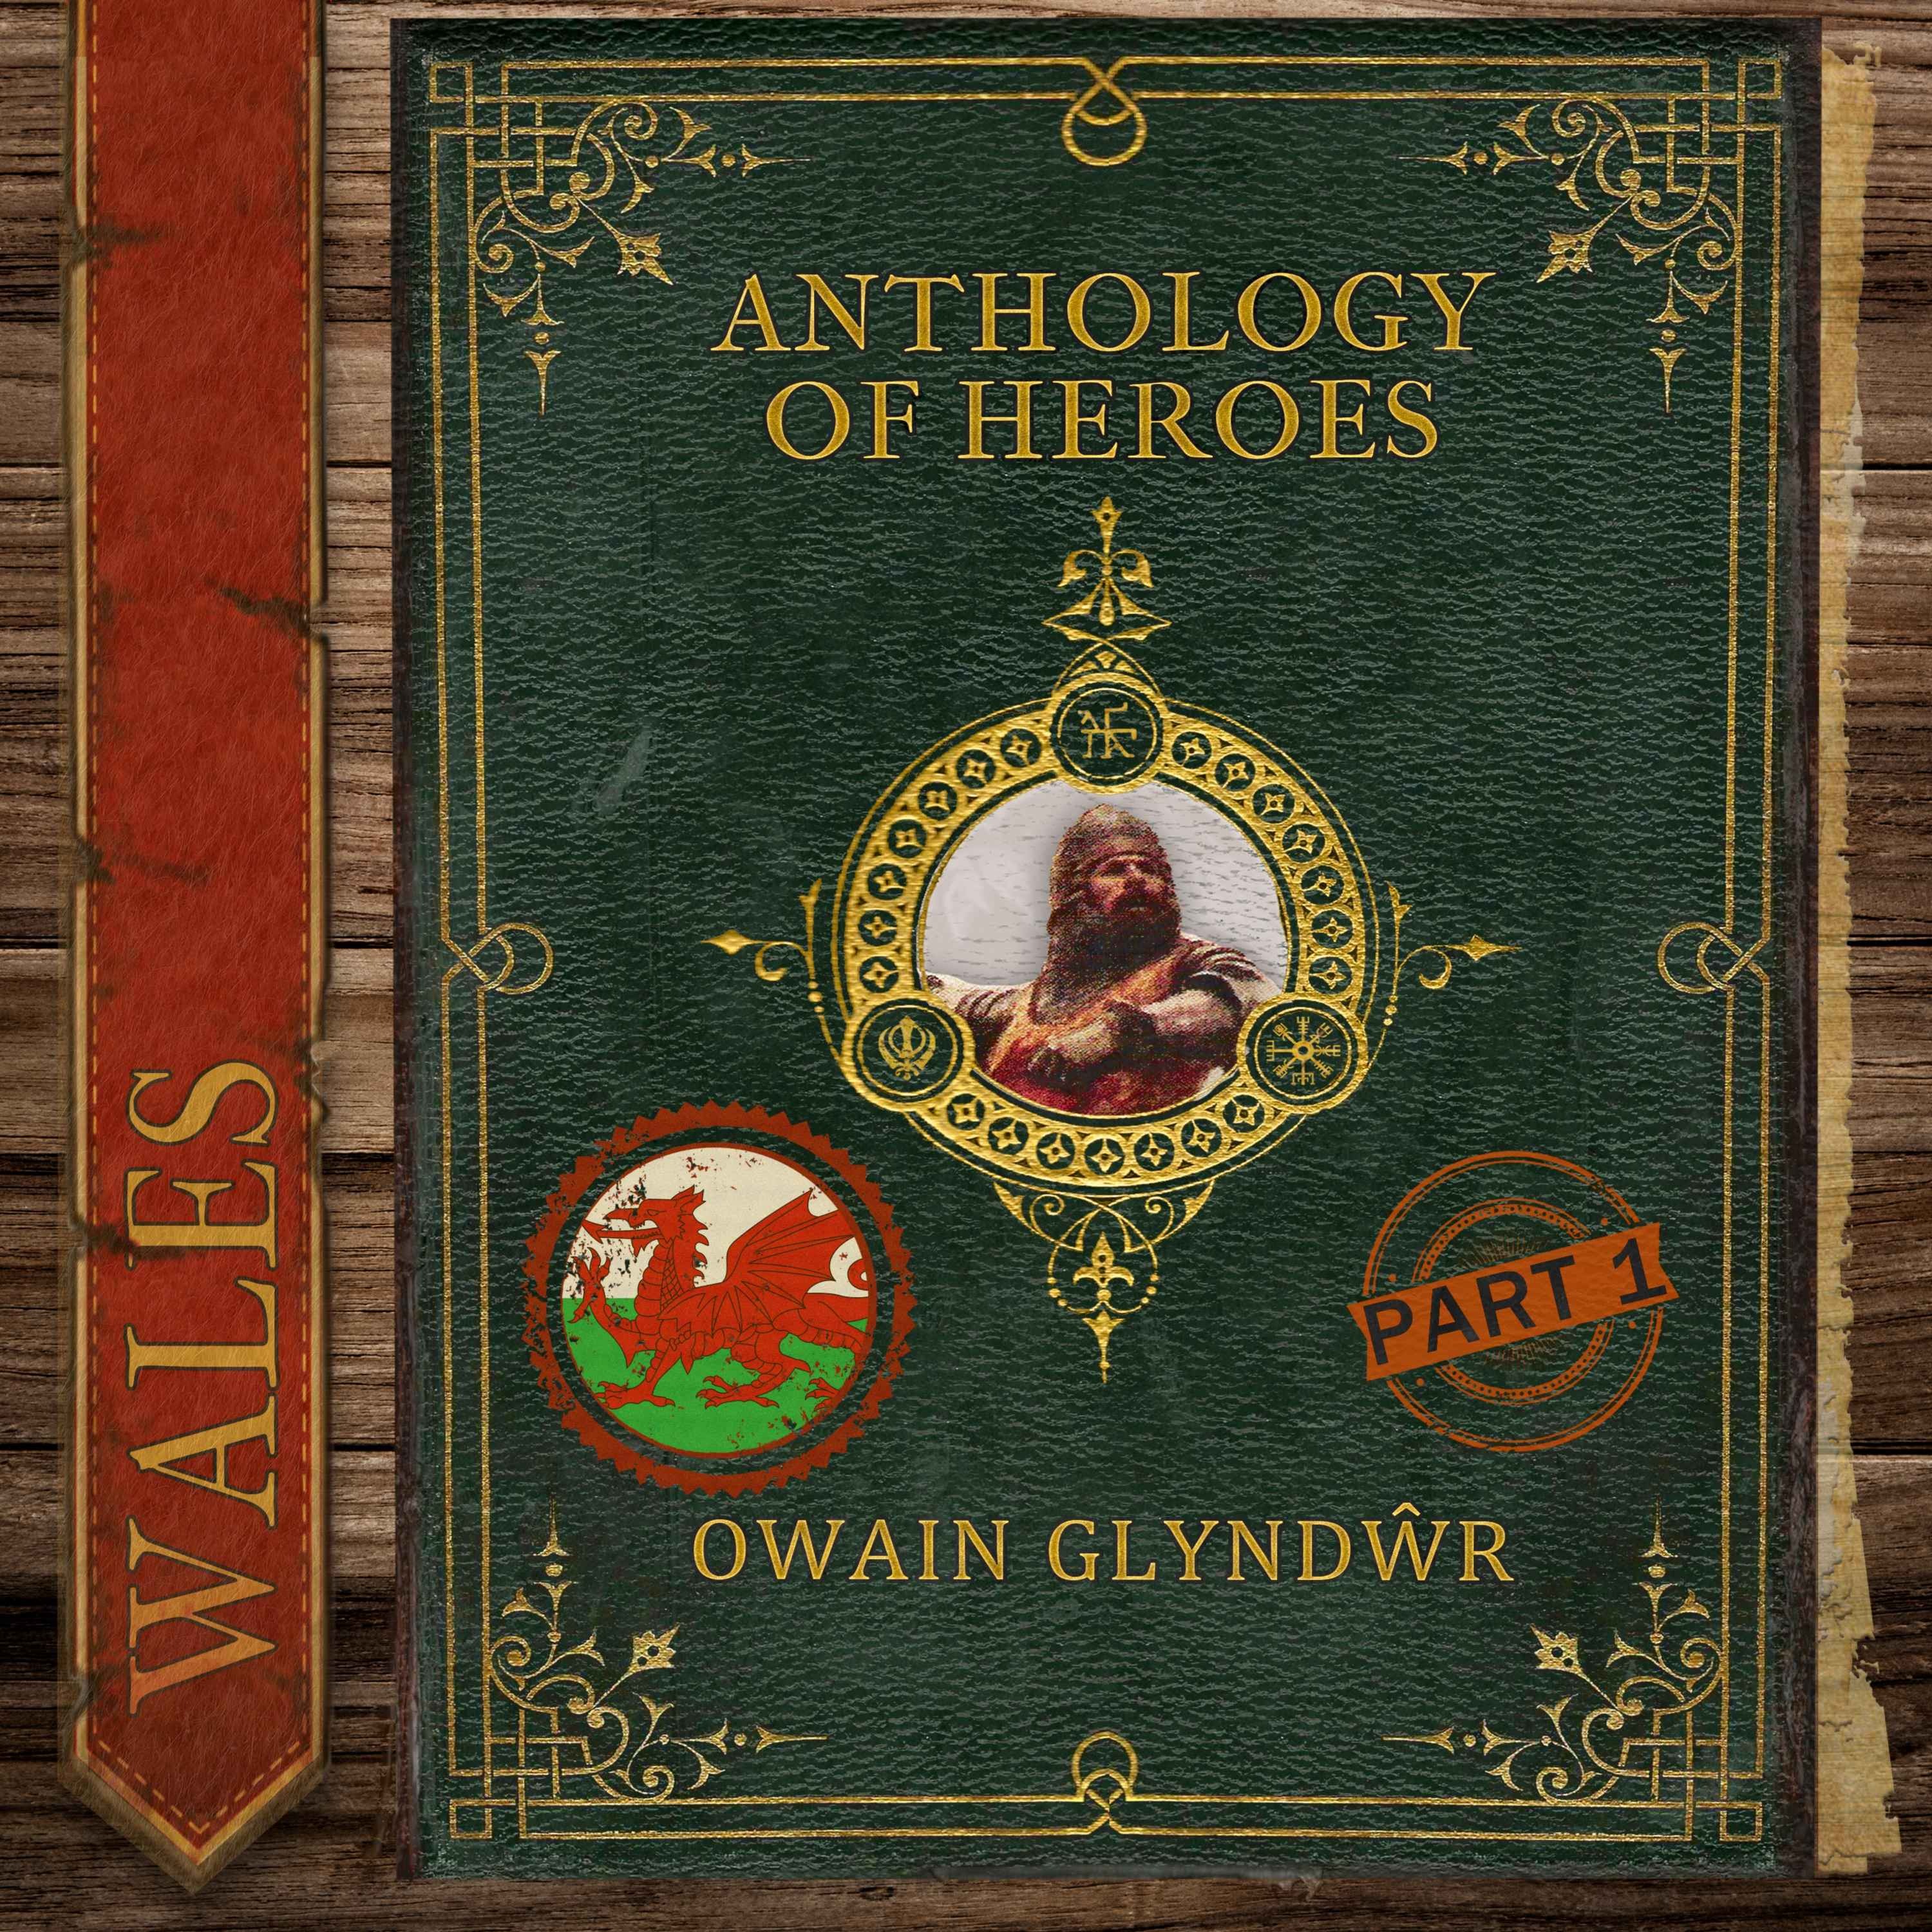 Owain Glyndŵr, The Last Prince of Wales (Part 1) Image